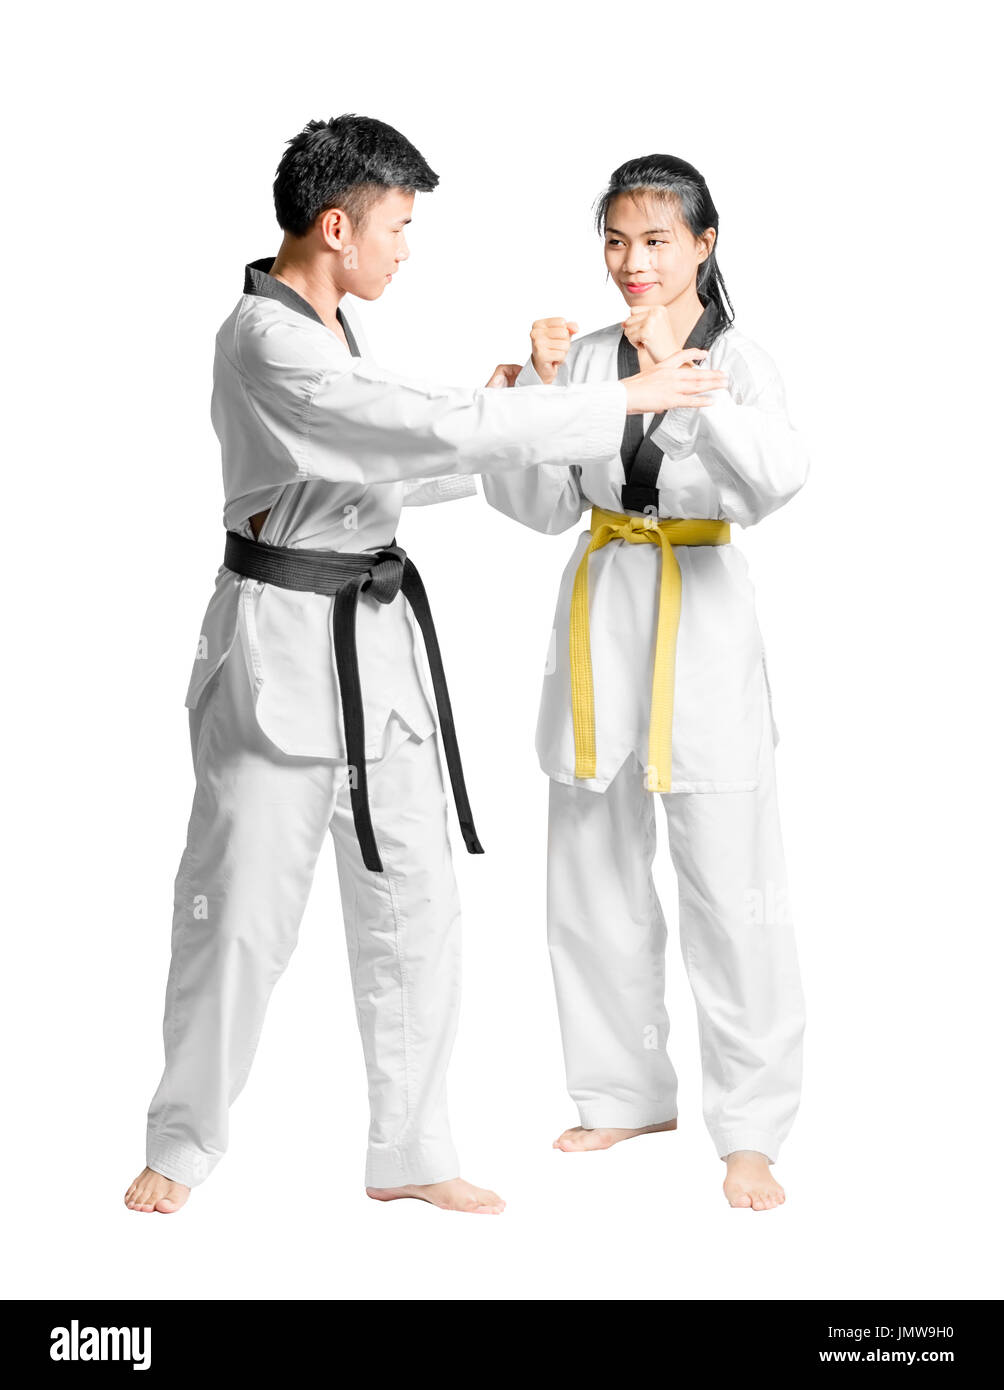 Portrait d'un homme asiatique taekwondo professionnel degré ceinture noire ( Dan) de l'enseignement pour femme de degré ceinture jaune. Pleine longueur  isolé sur blanc backgrou Photo Stock - Alamy